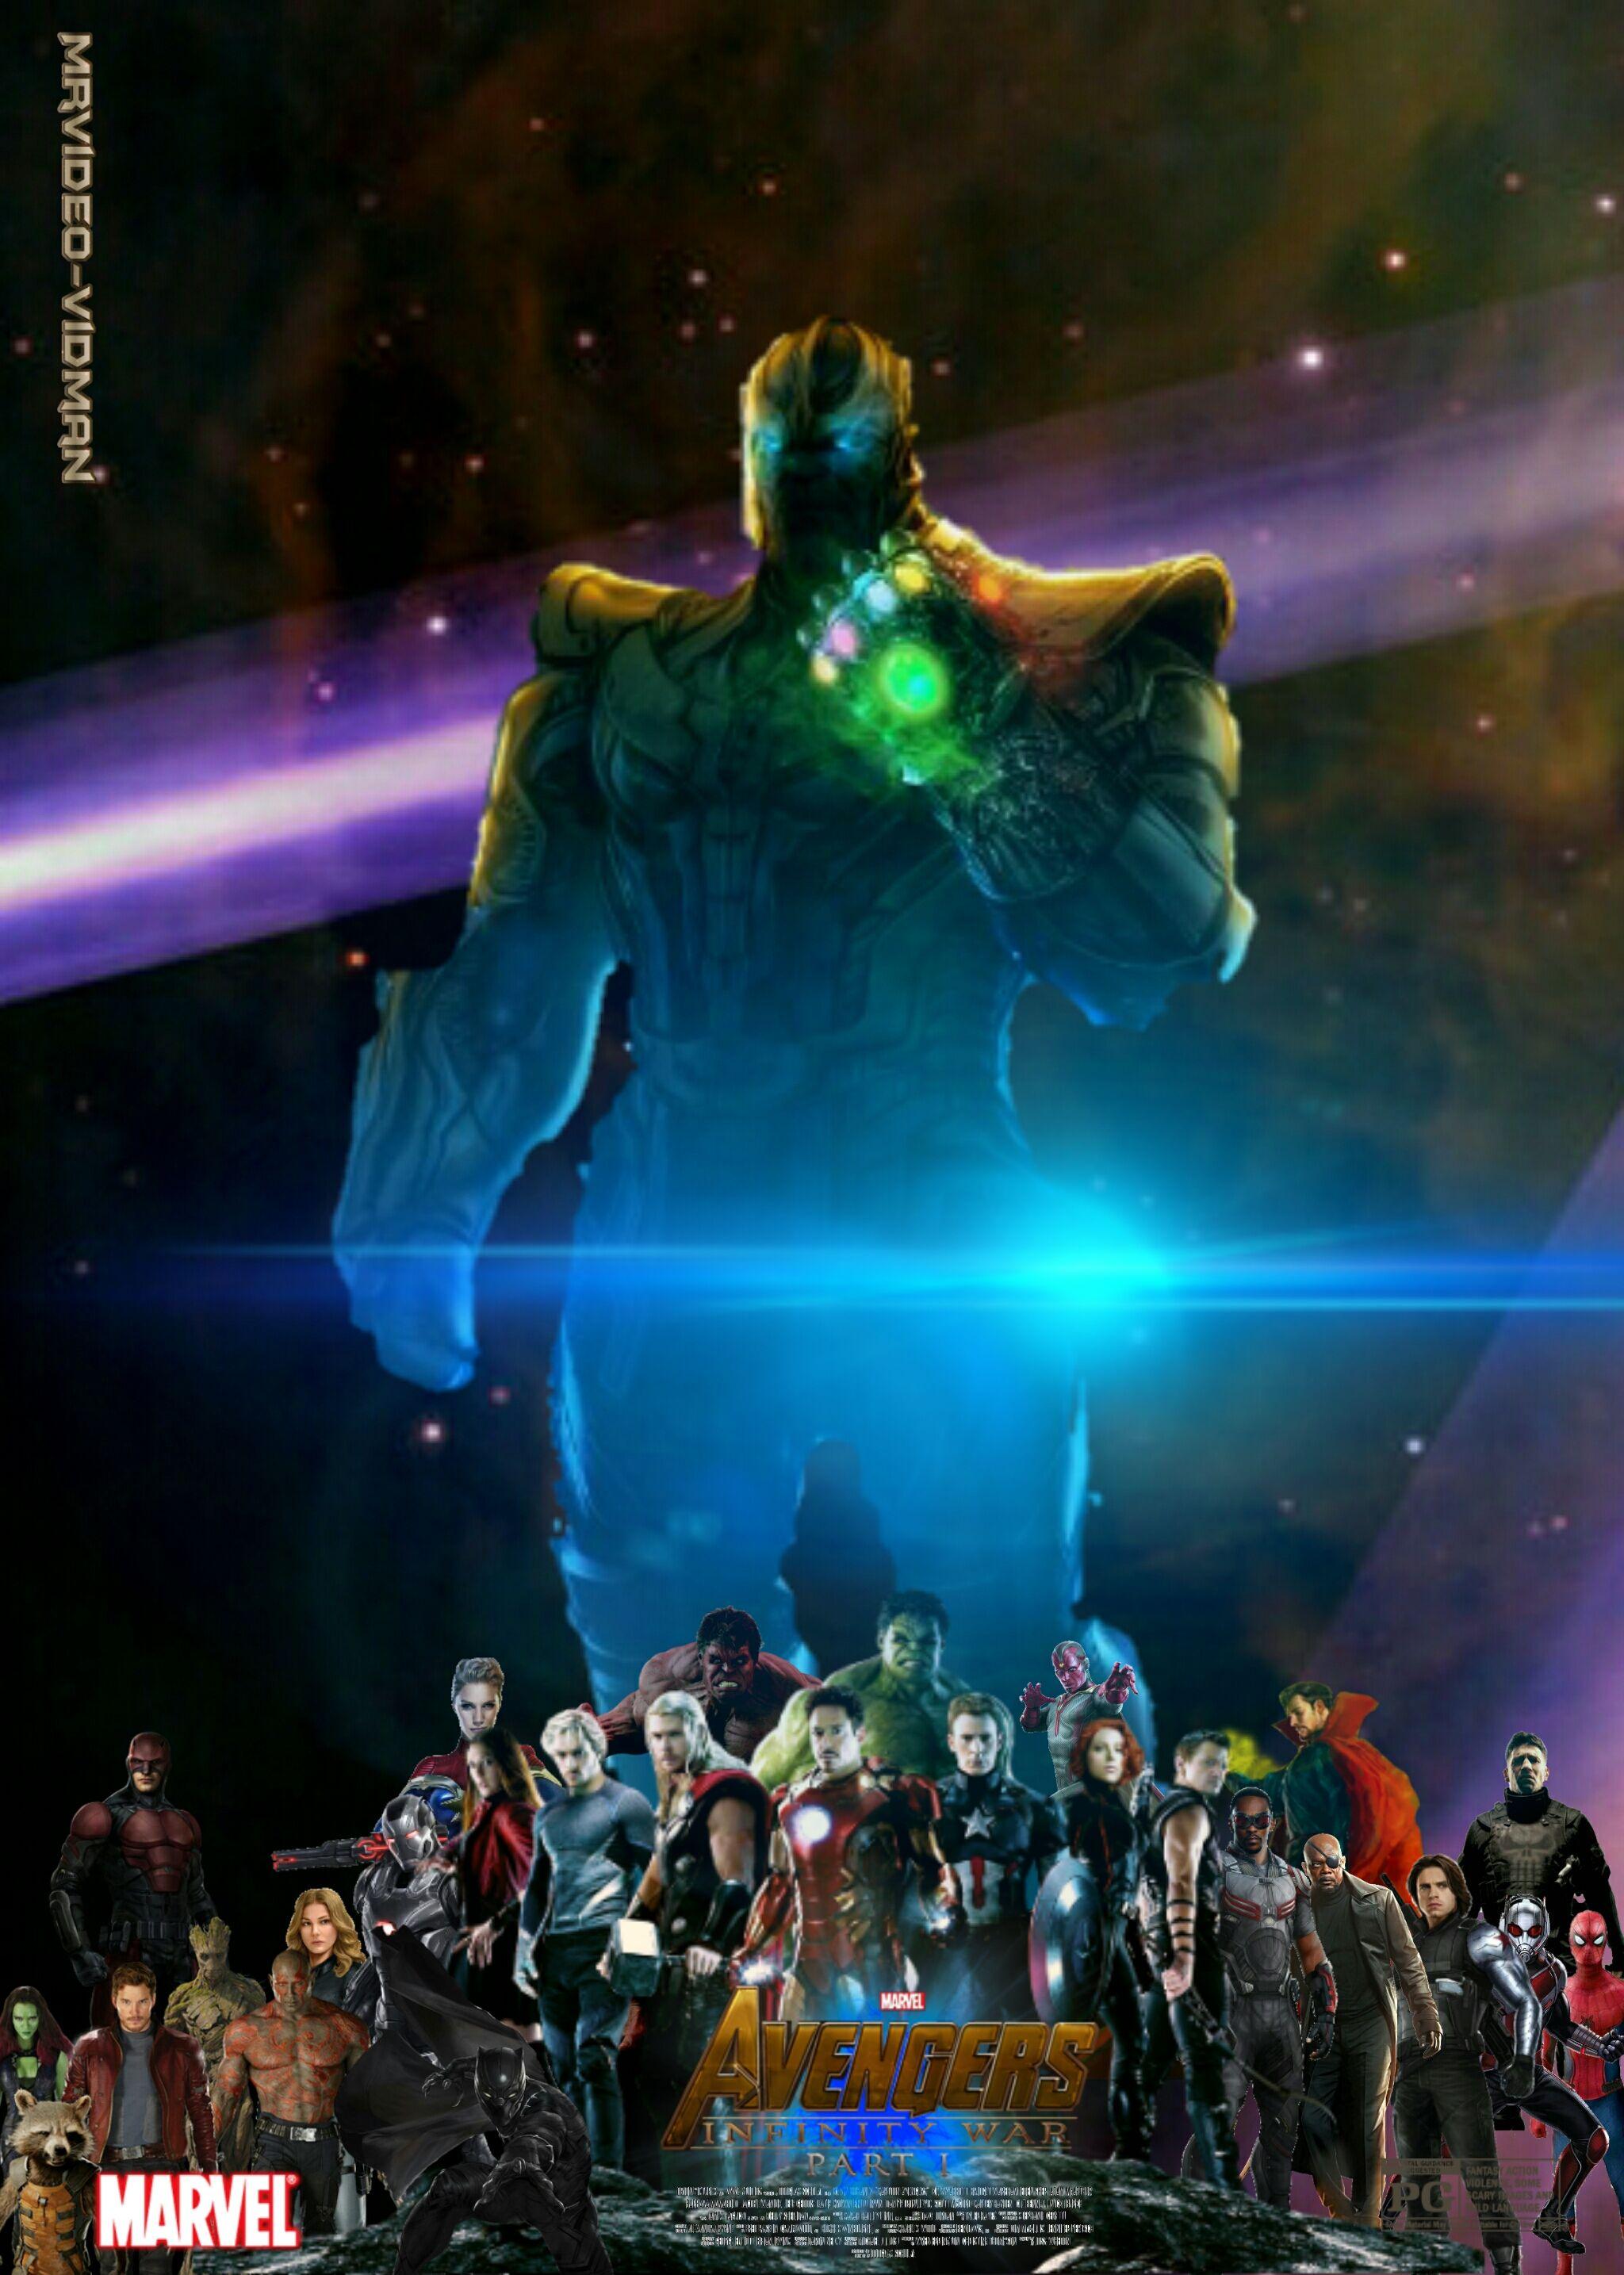 Avengers Infinity War Part 1 Poster (Fan Made) By MrVideo VidMan